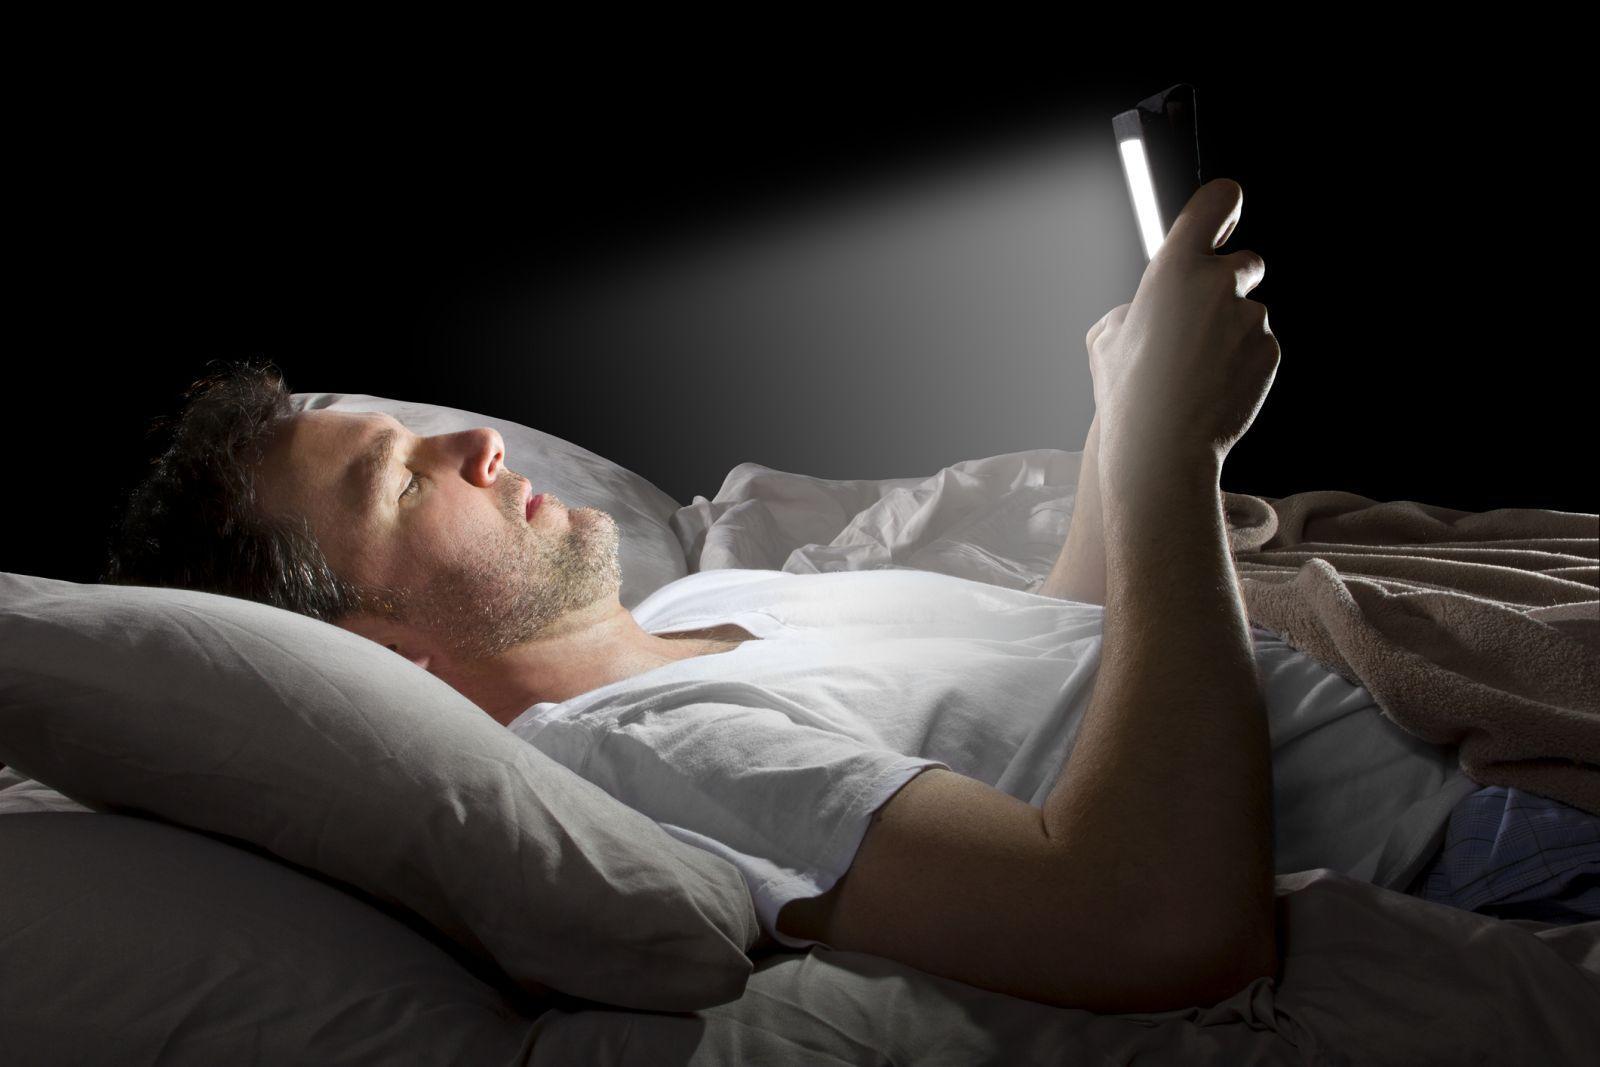 दिन-रात मोबाइल से चिपके रहना पड़ सकता है महंगा